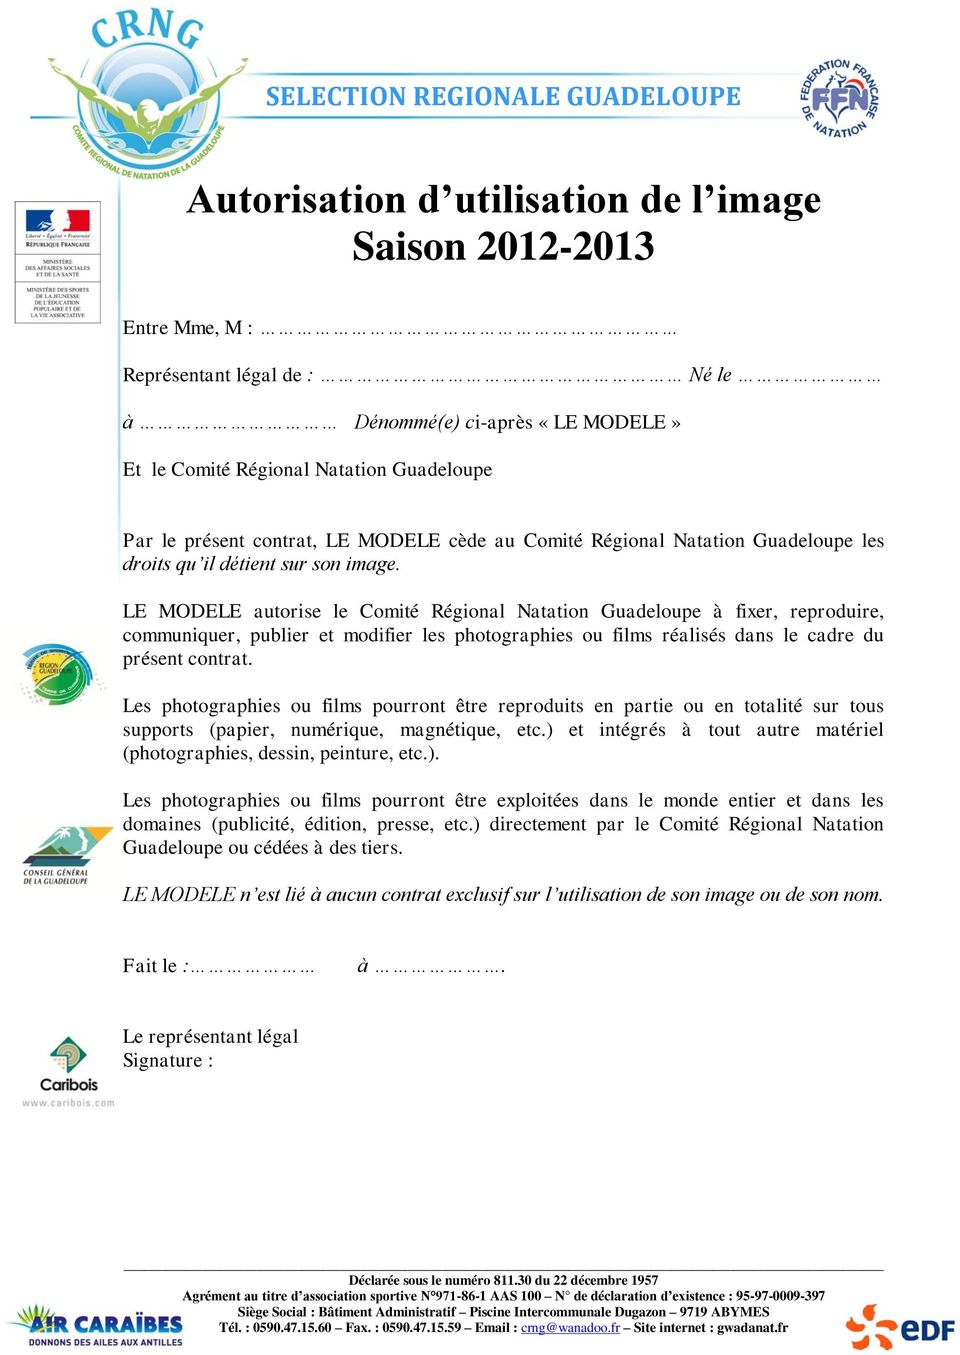 LE MODELE autorise le Comité Régional Natation Guadeloupe à fixer, reproduire, communiquer, publier et modifier les photographies ou films réalisés dans le cadre du présent contrat.